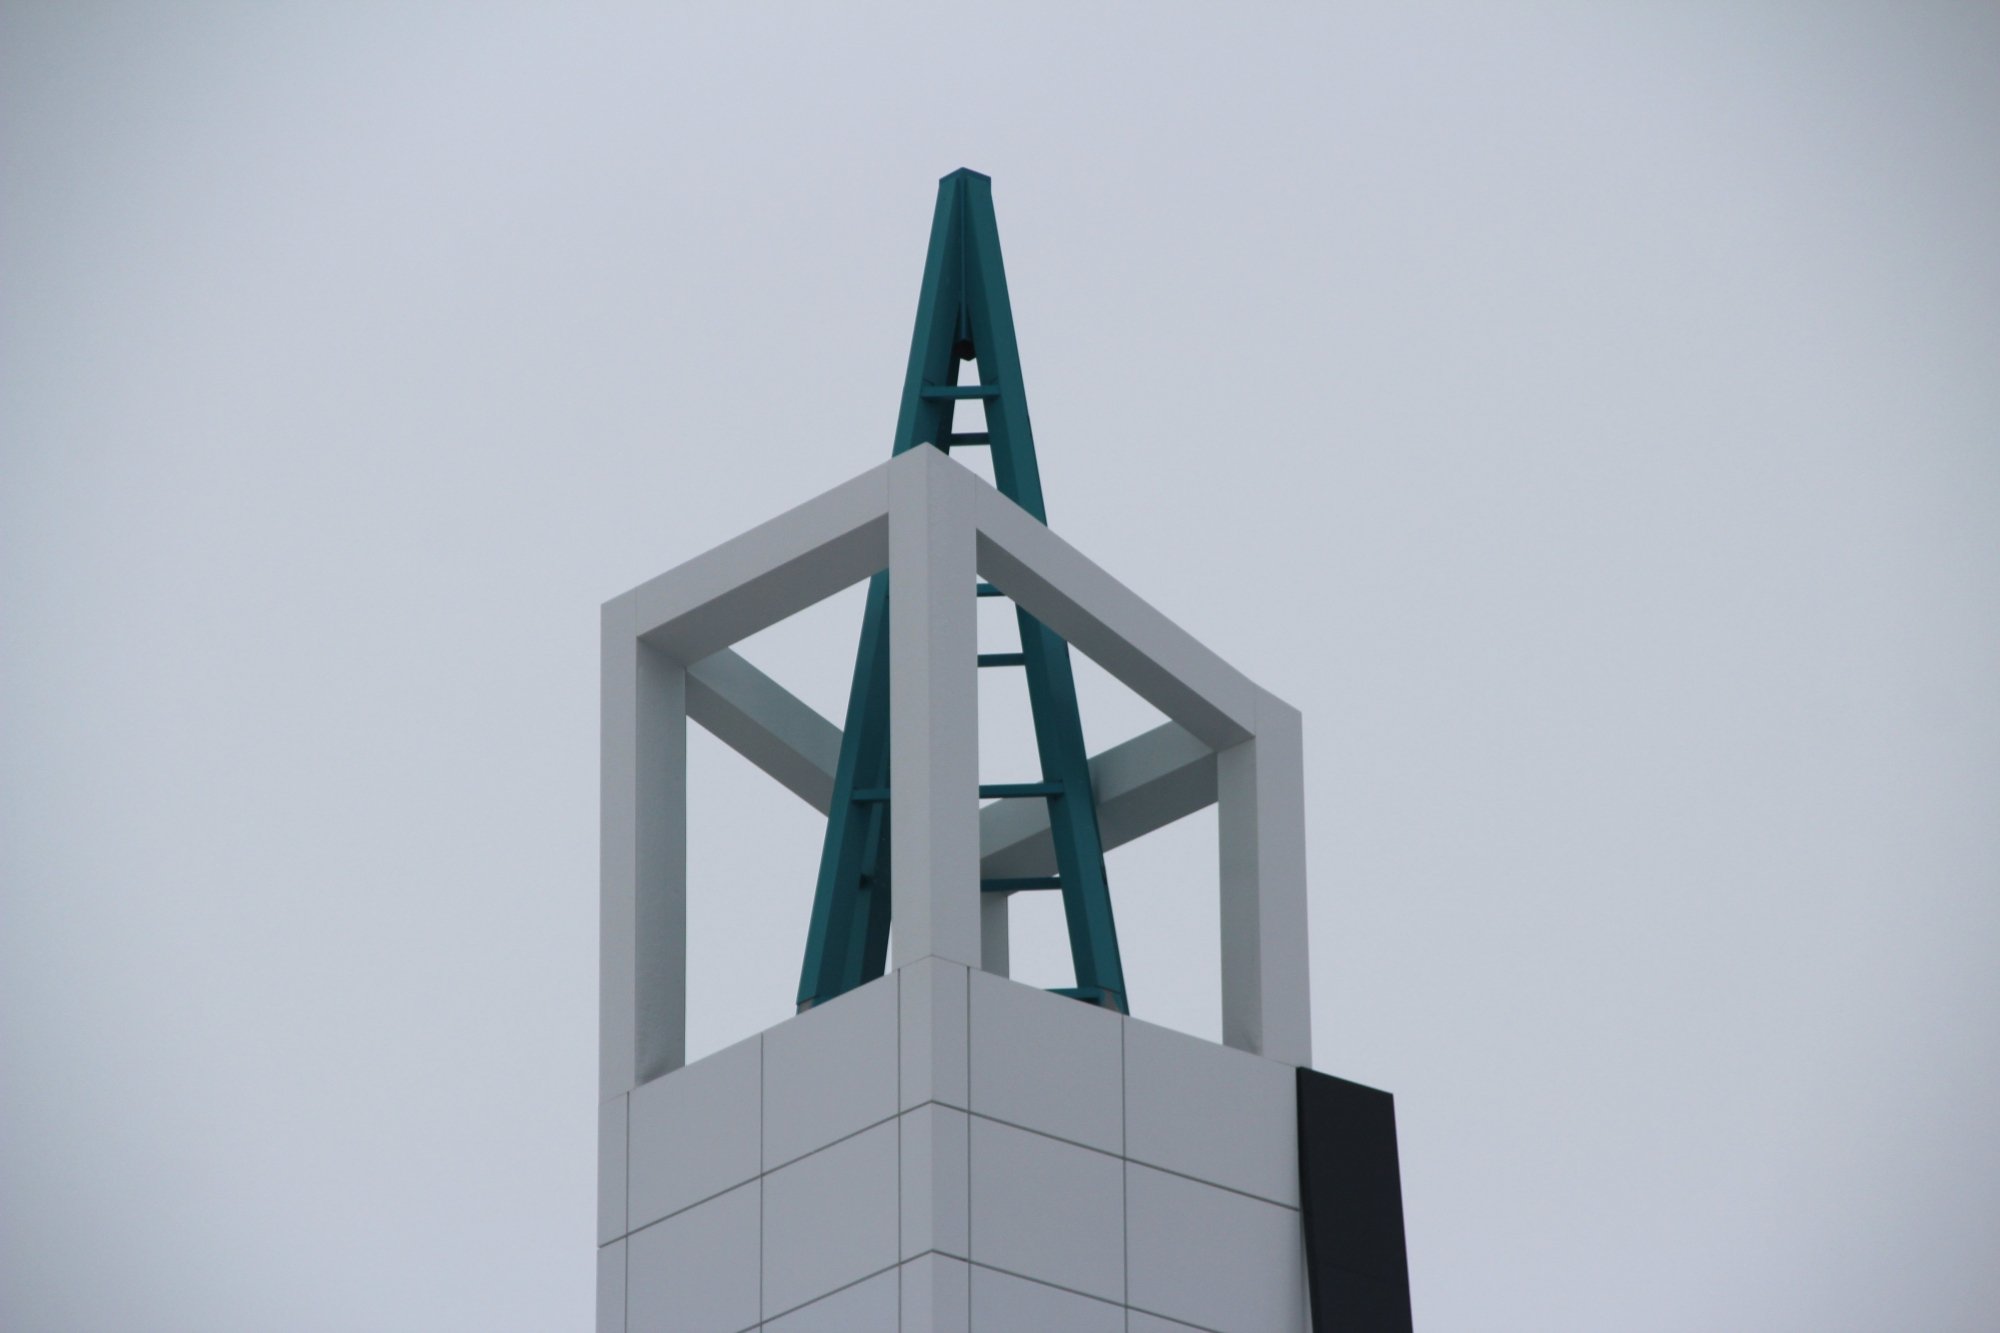 В Челнах на М-7 завершают строительство мечети в стиле хай-тек (фото)